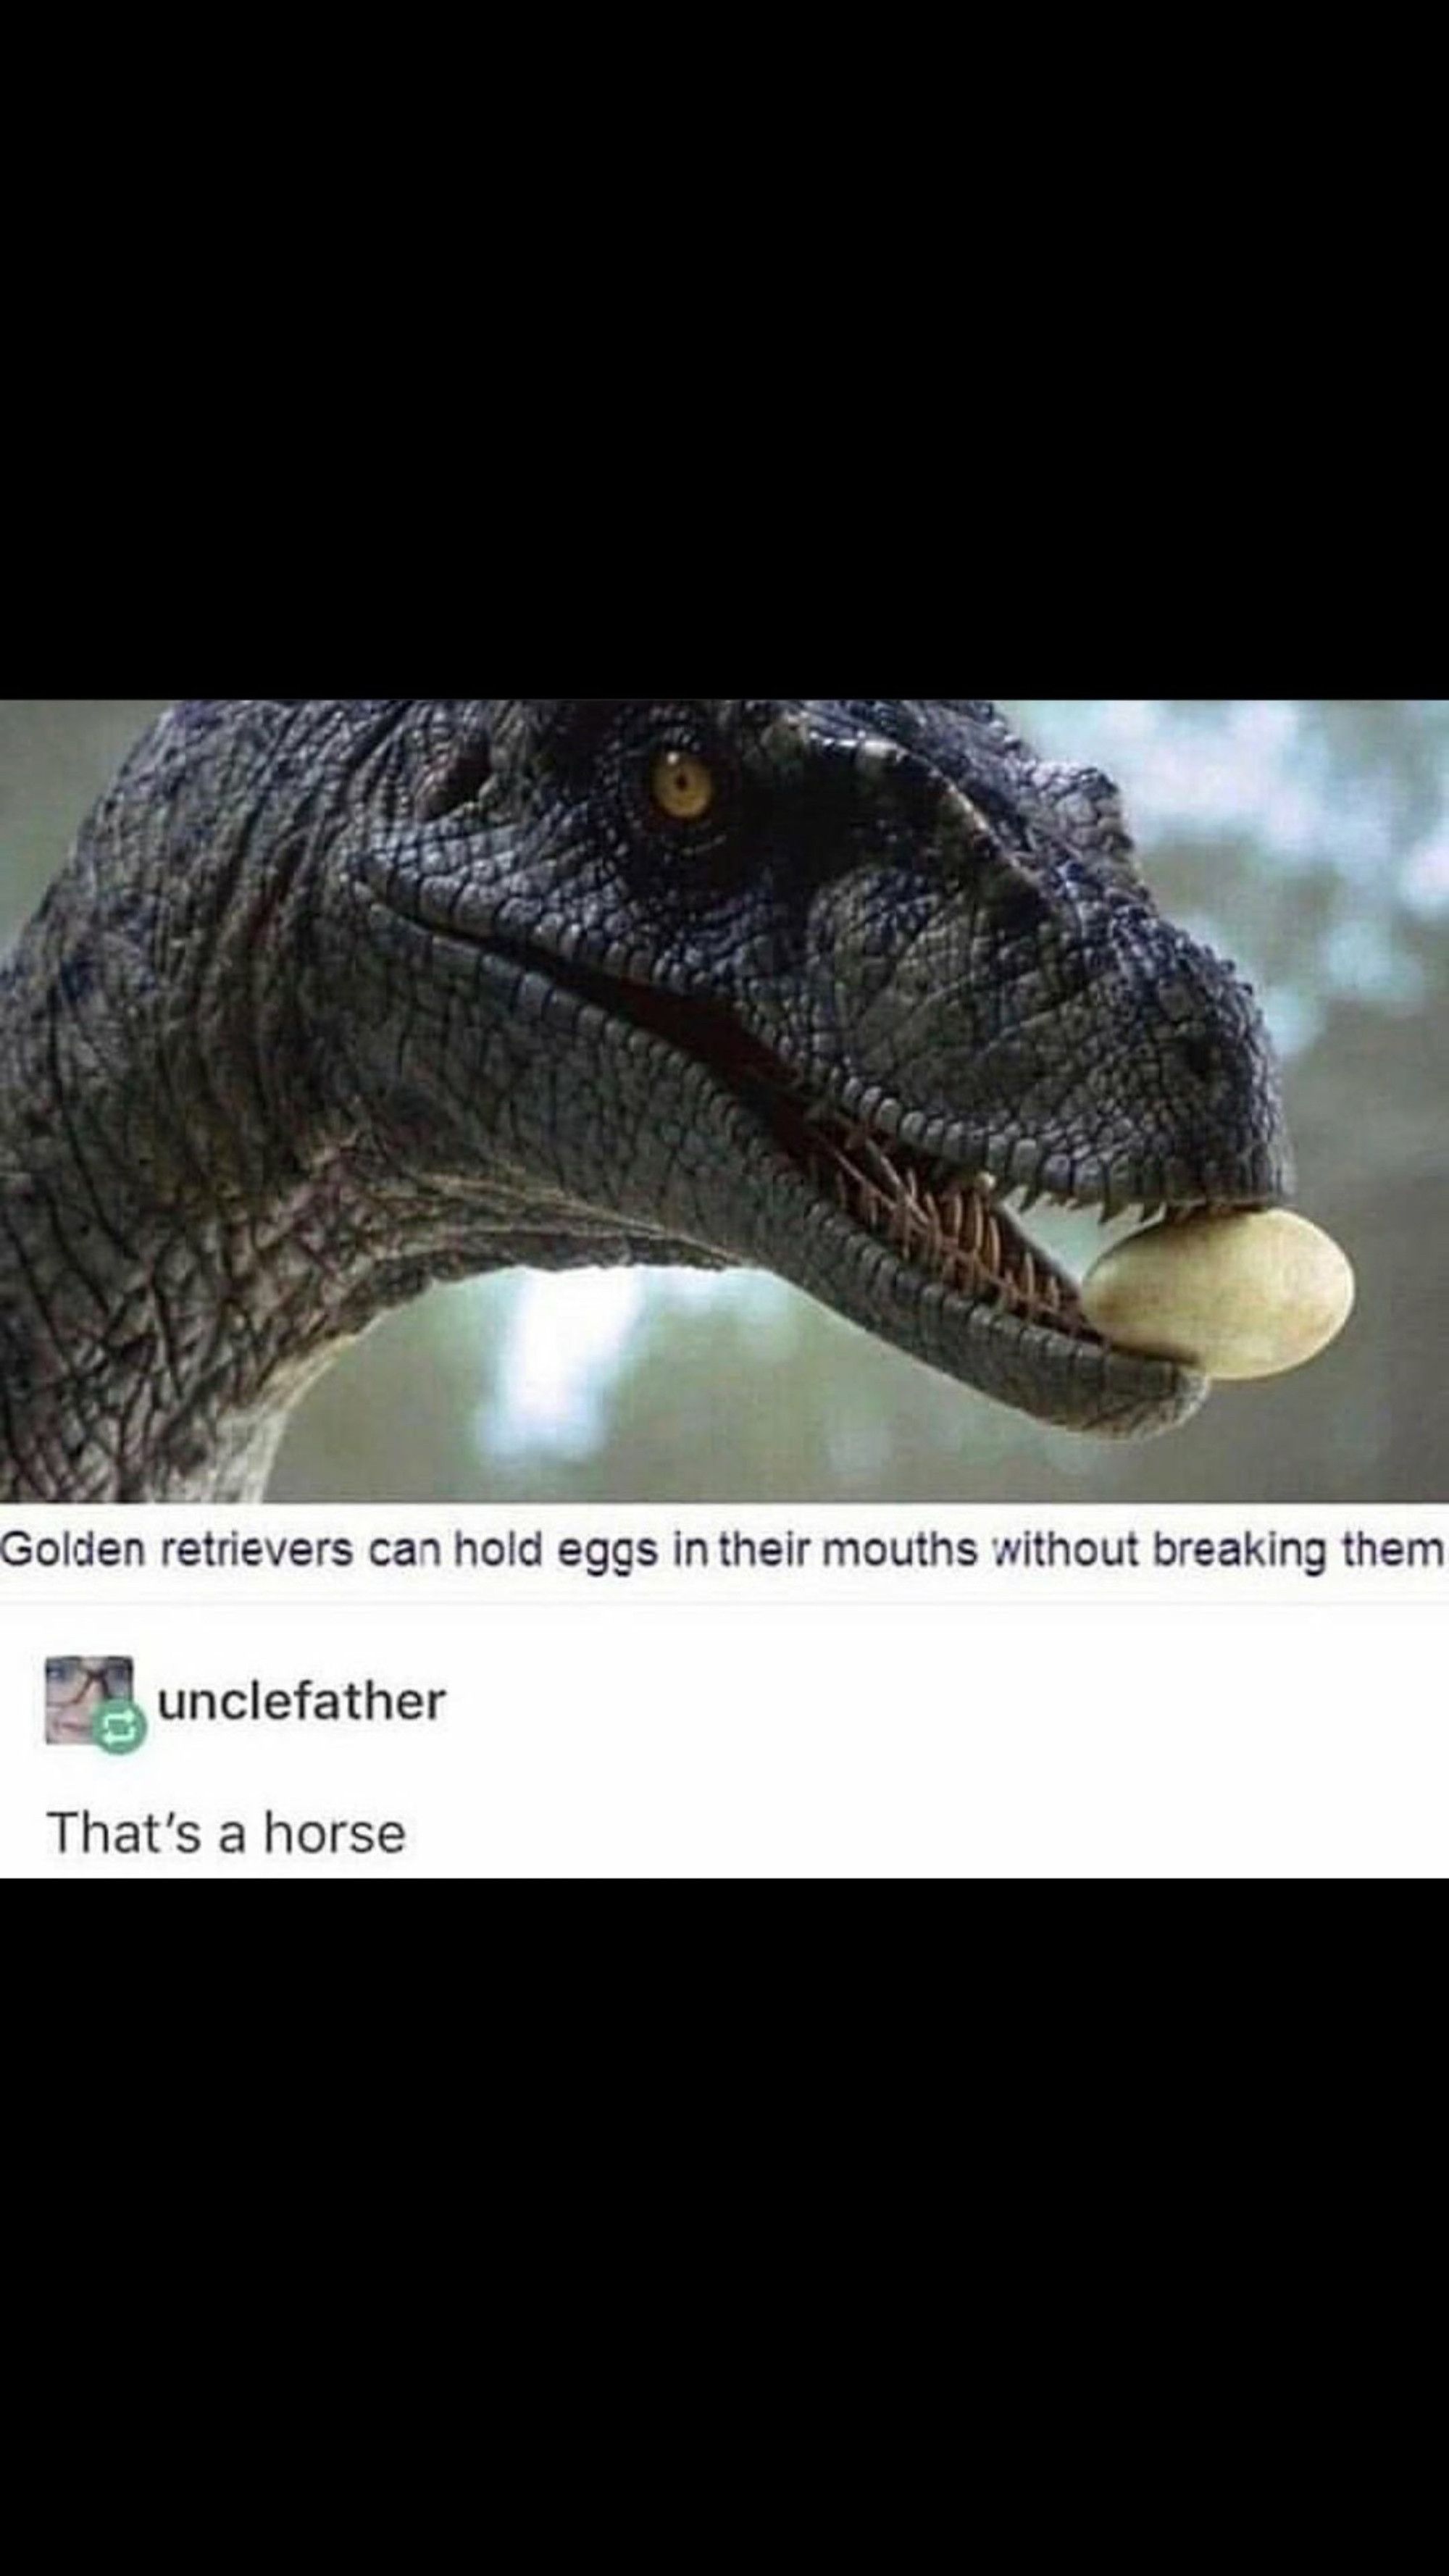 Definitely a horse.